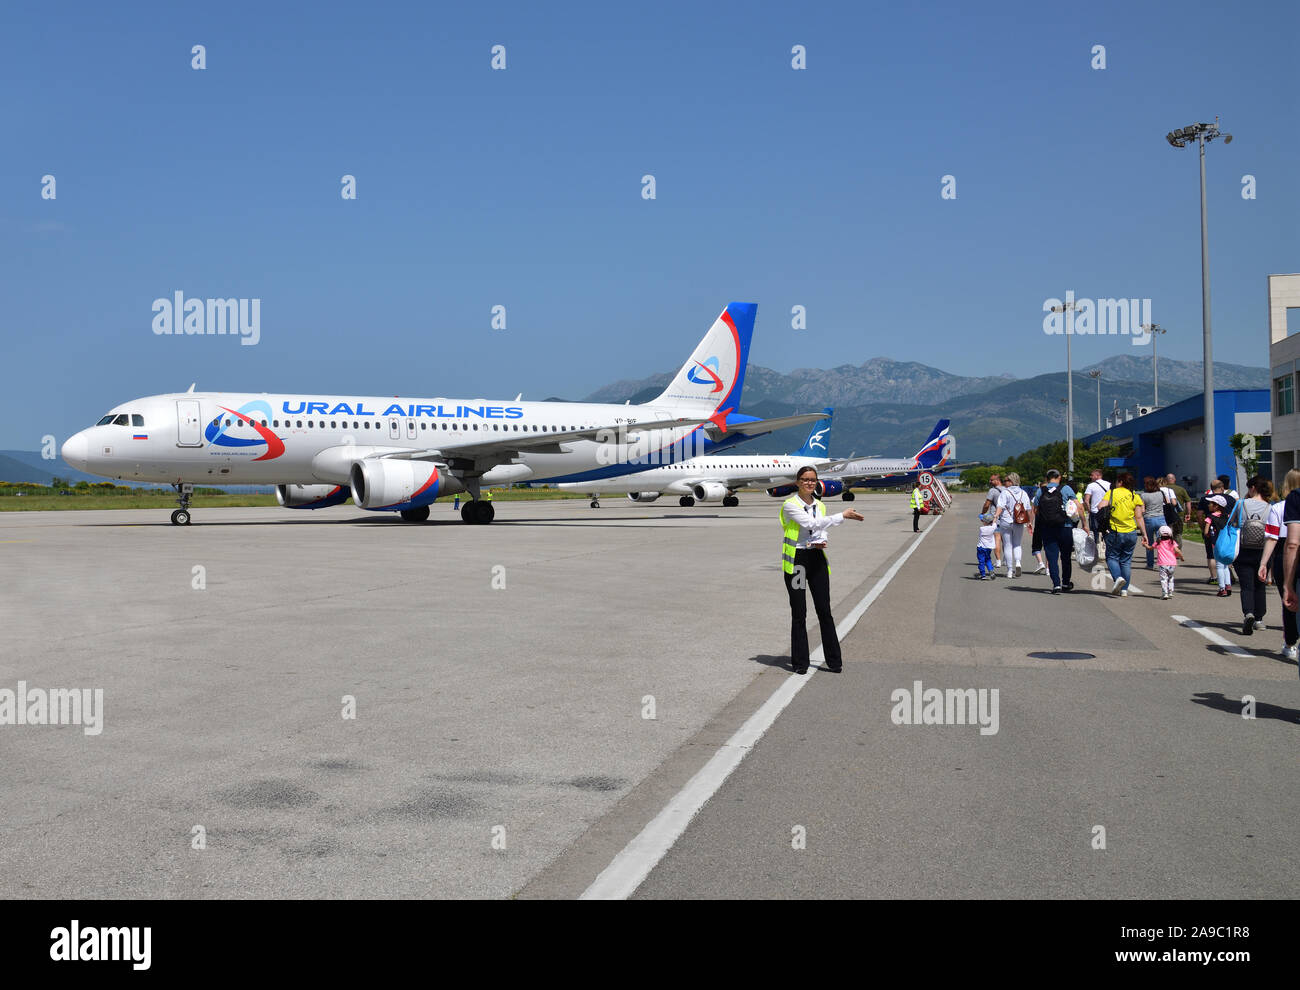 Tivat, Monténégro - juin 8. 2019. Avion de la compagnie aérienne Ural sur le champ de décollage à l'aéroport international. Airbus a320 Banque D'Images